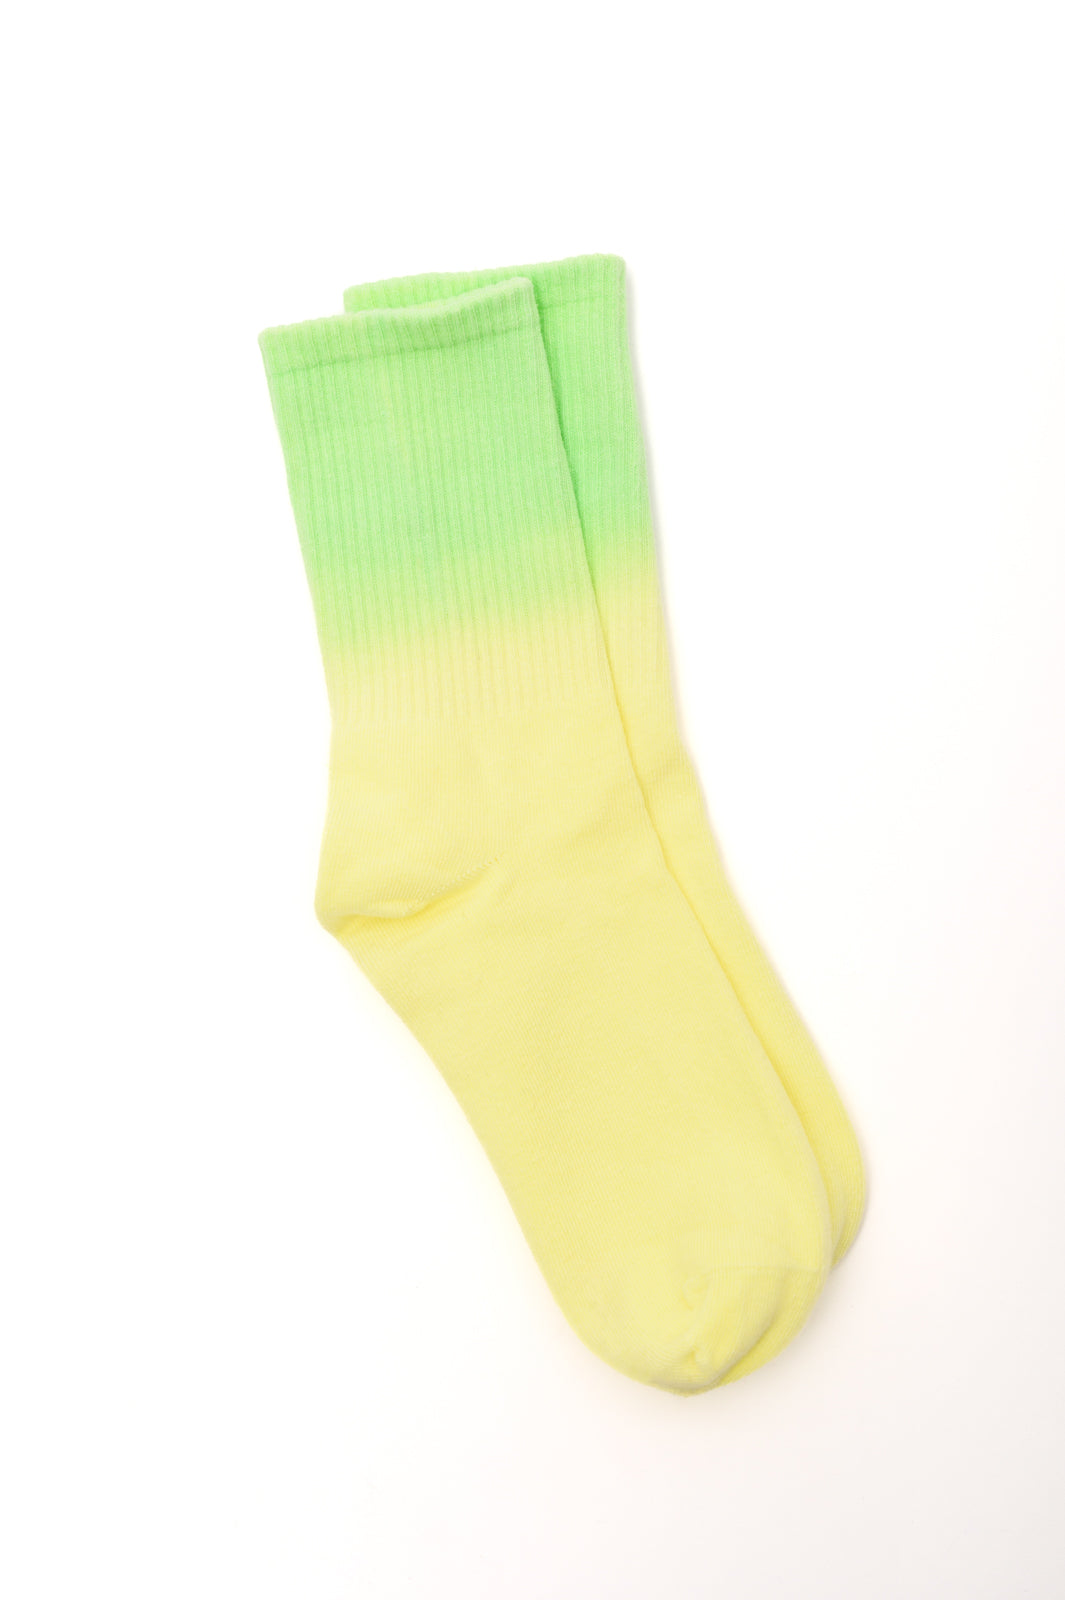 Sweet Socks Ombre Tie Dye